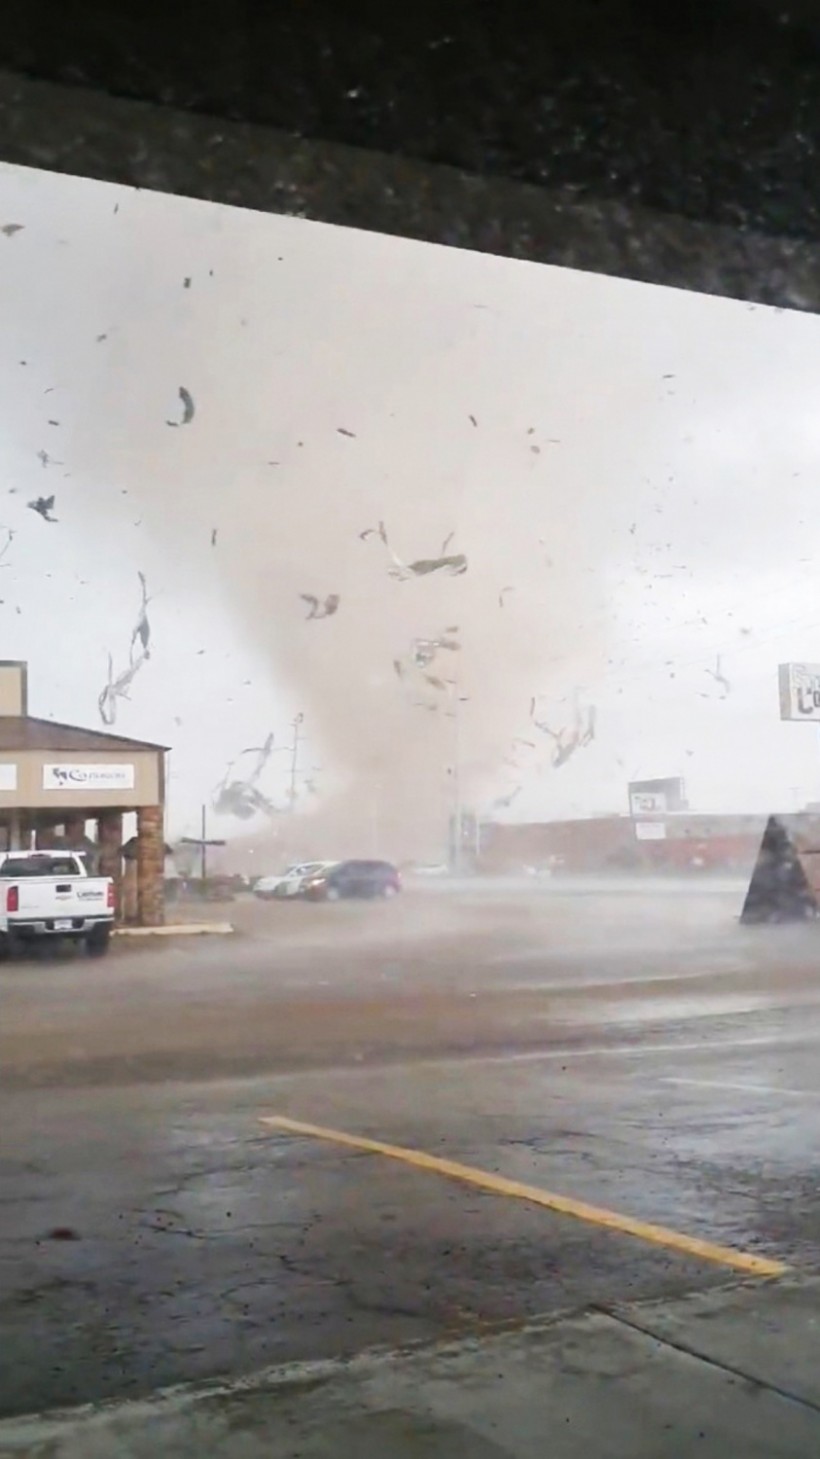 A tornado wrecking havoc in Jonesboro, Arkansas